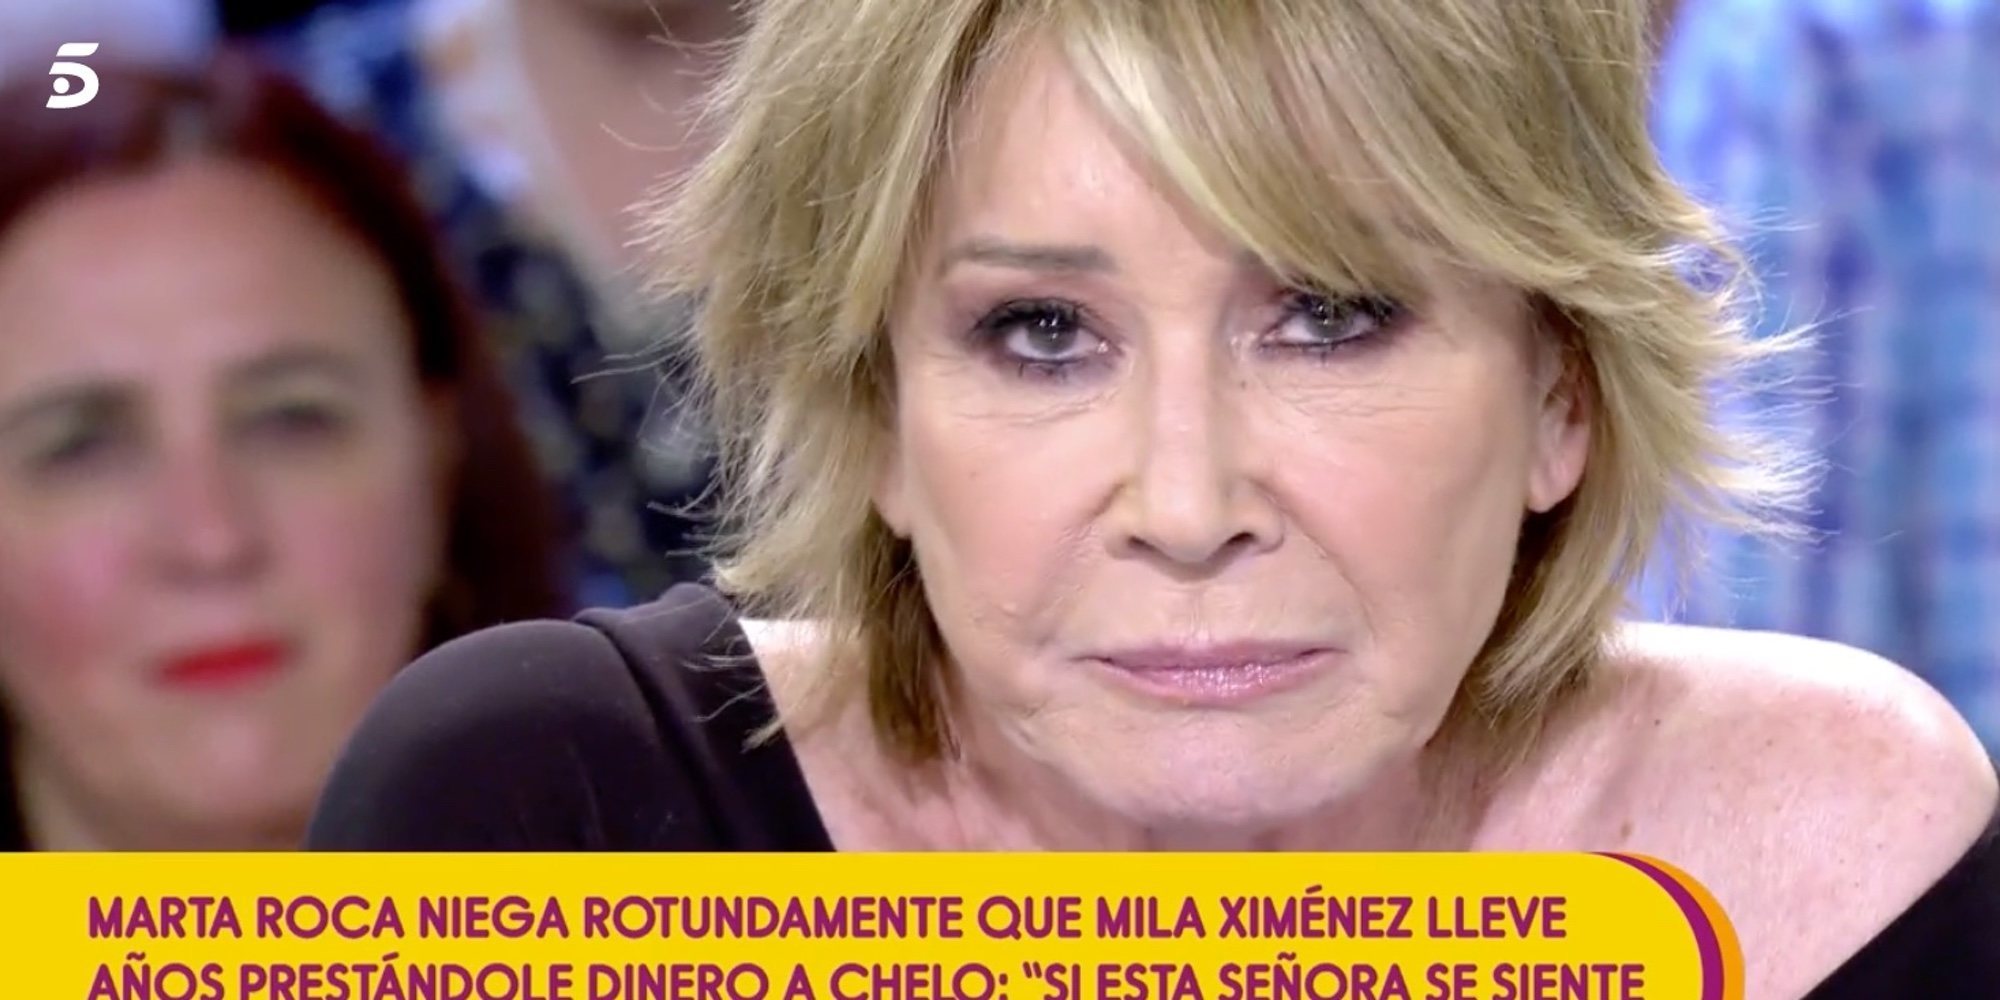 Mila Ximénez carga duramente contra Marta Roca: "No te has preocupado jamás de lo que le ha pasado a Chelo"